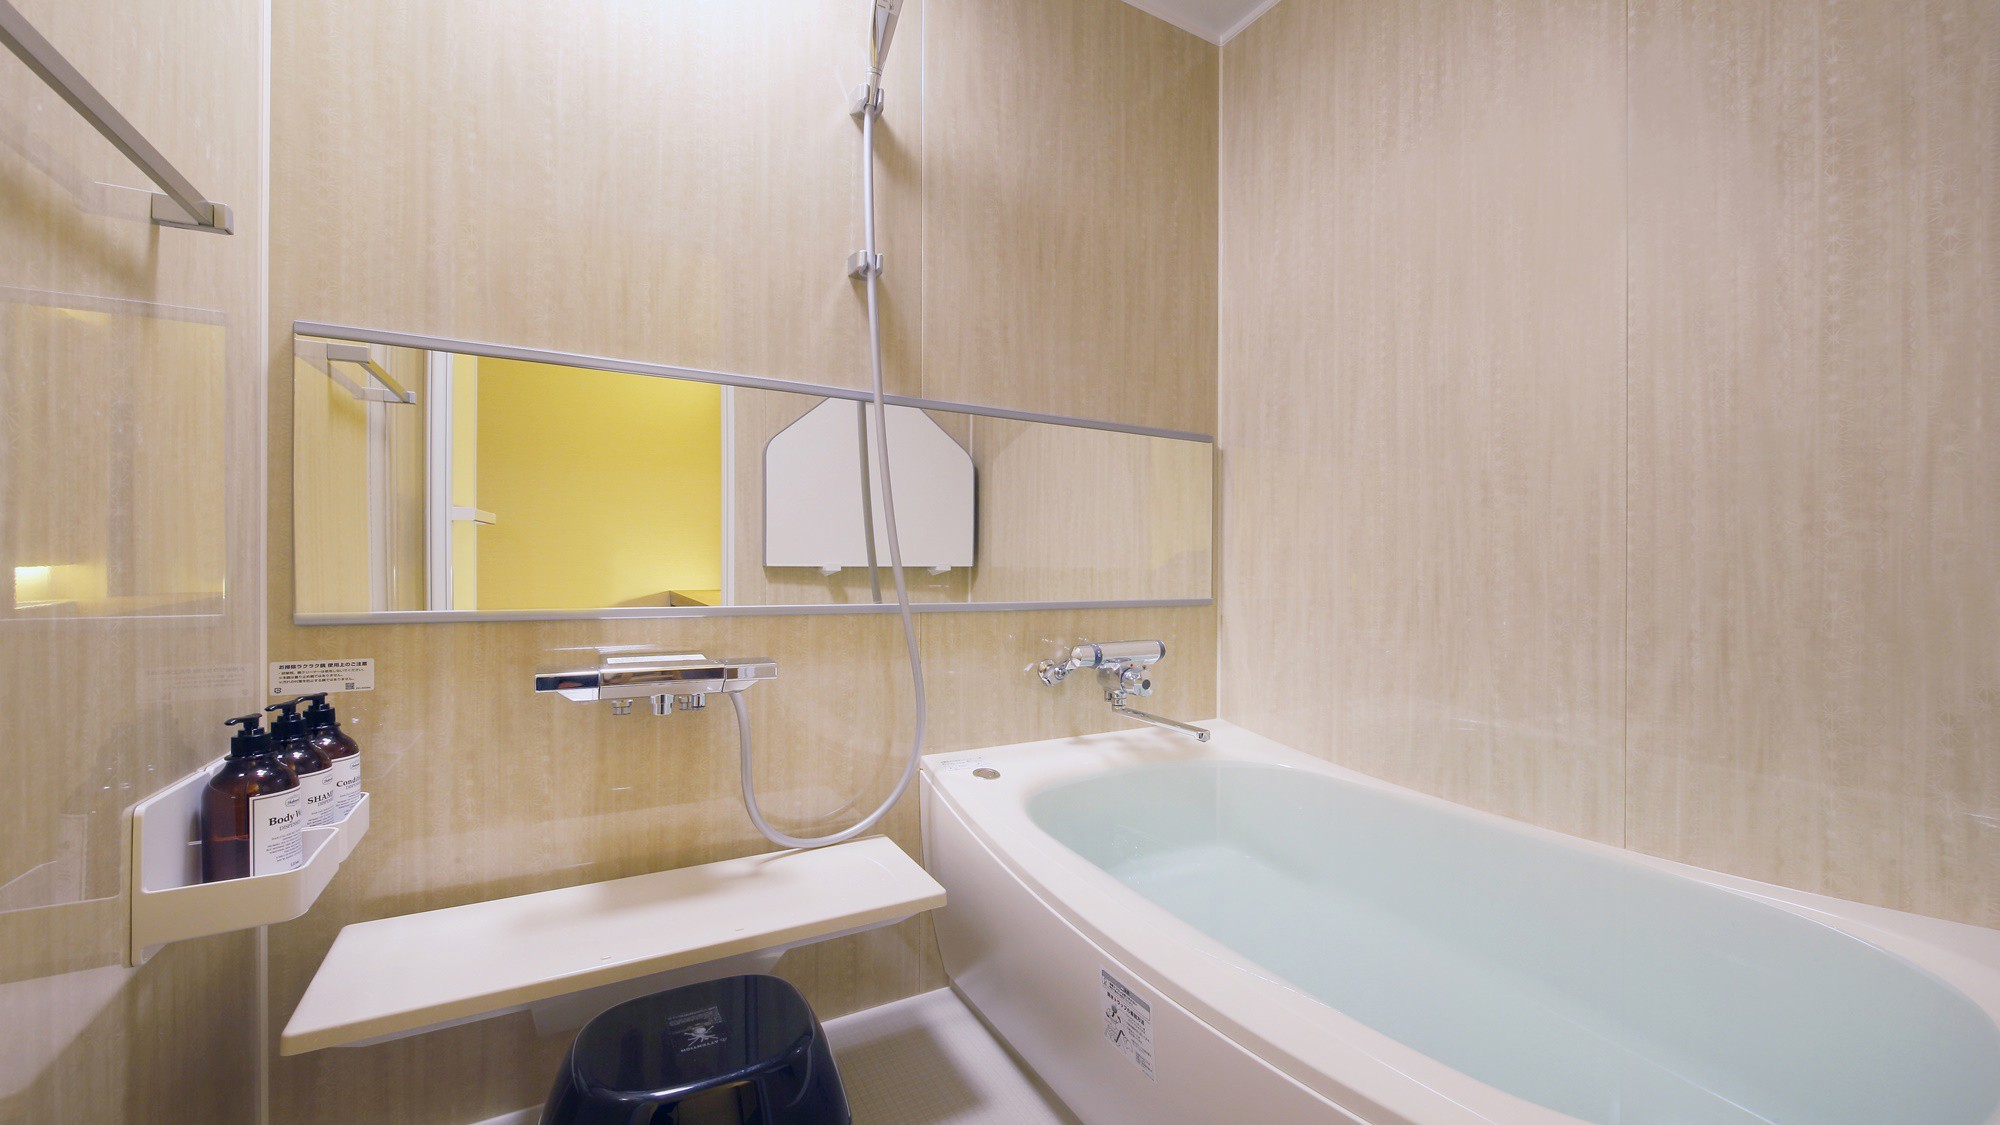 『春霞-しゅんか-』内風呂もお部屋のコンセプトに合わせた色で作られています